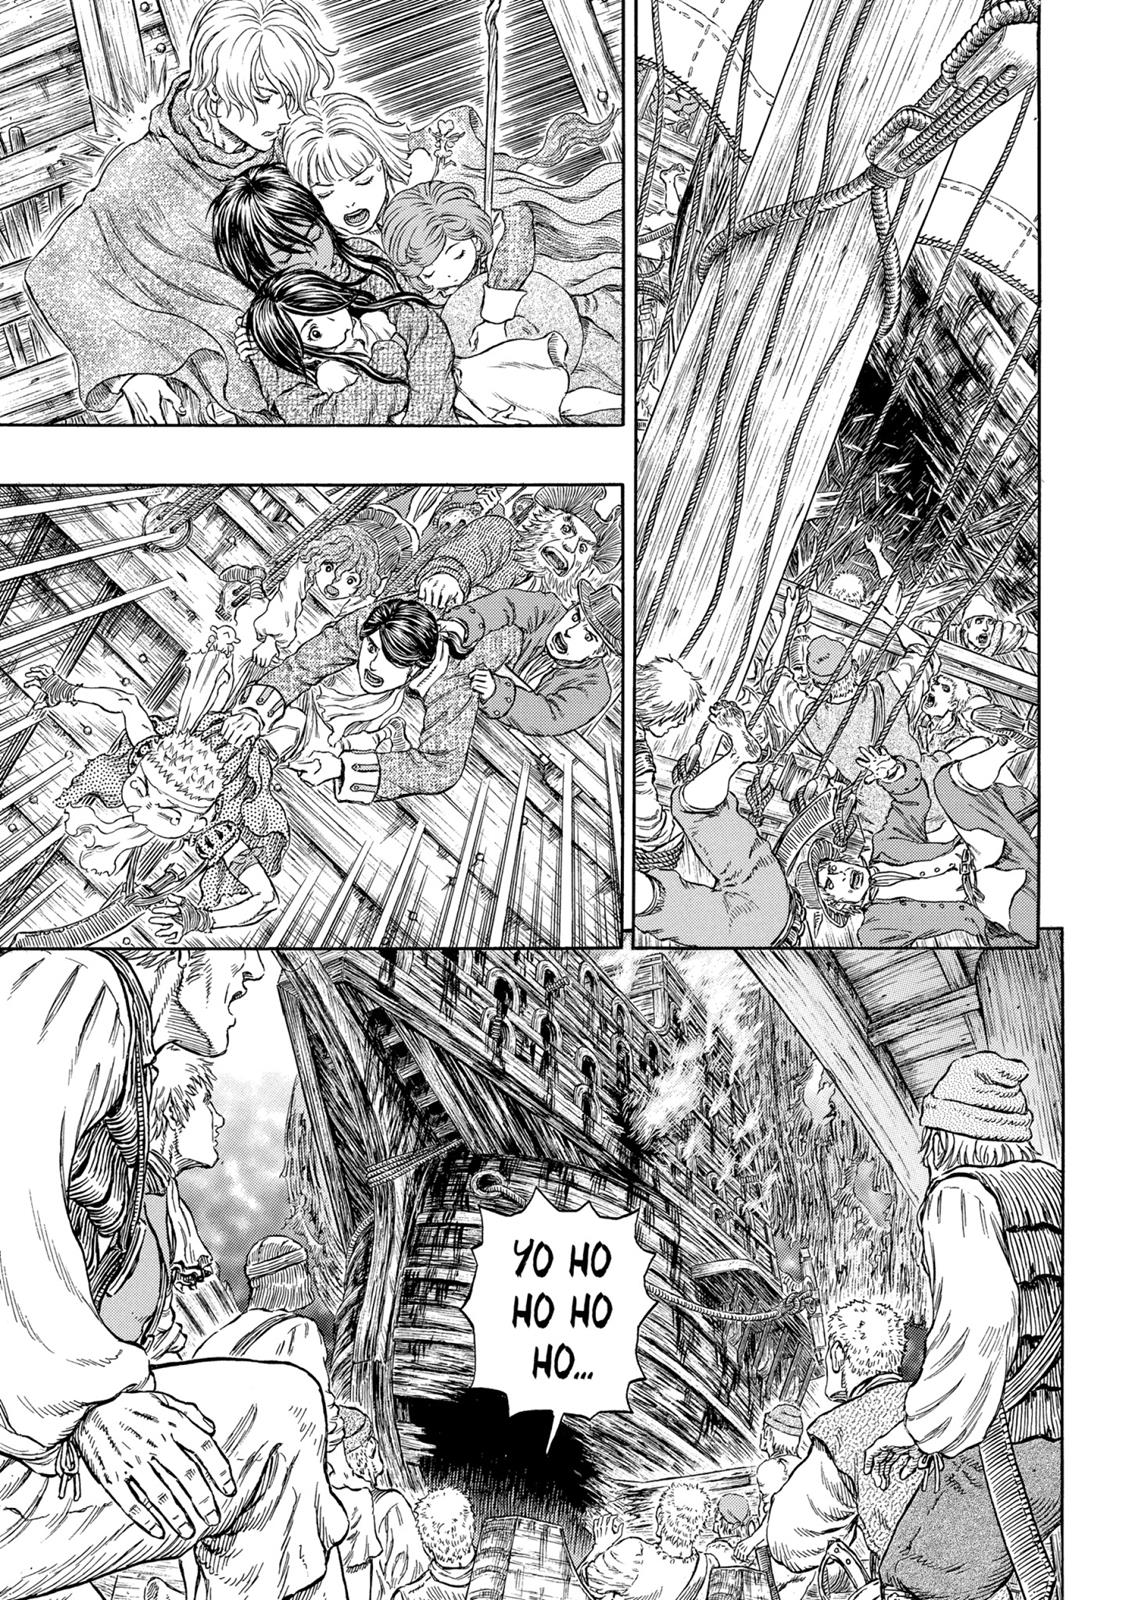 Berserk Manga Chapter 321 image 07